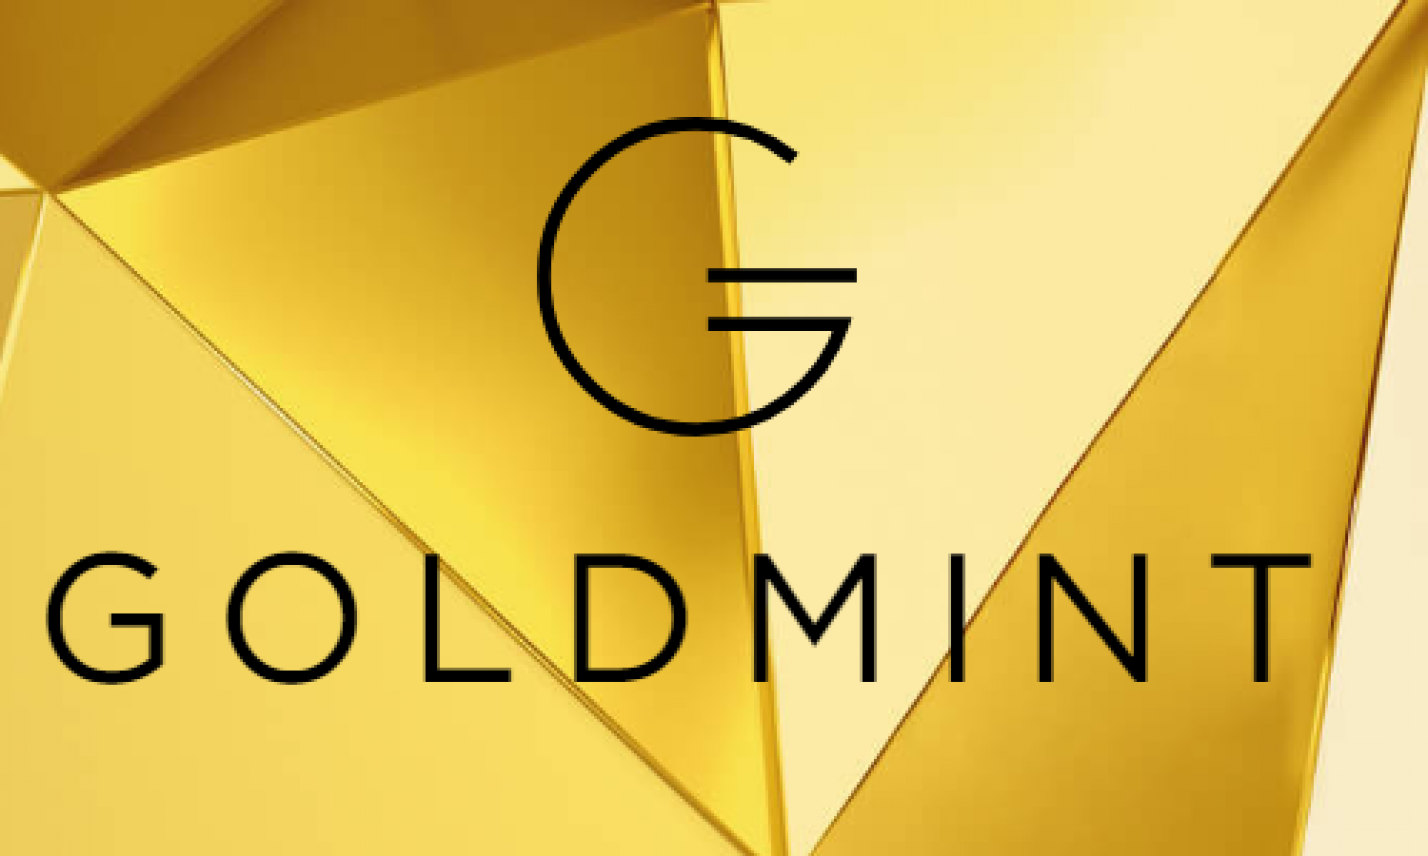 Goldmint – une crypto monnaie étalon-or